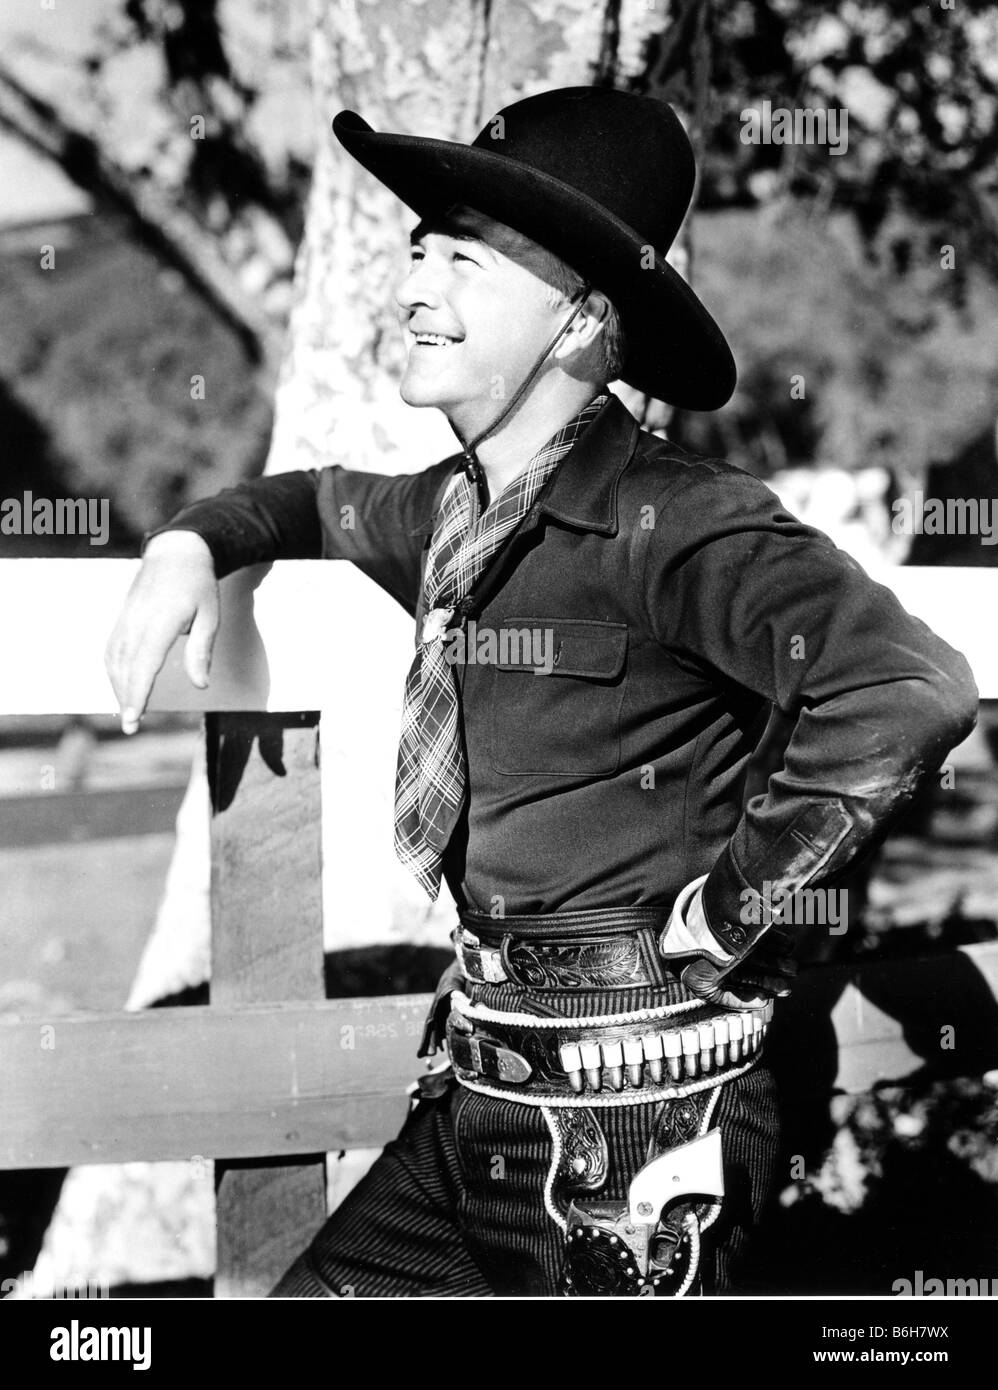 WILLIAM BOYD (Hopalong Cassidy) US Western film star Stock Photo